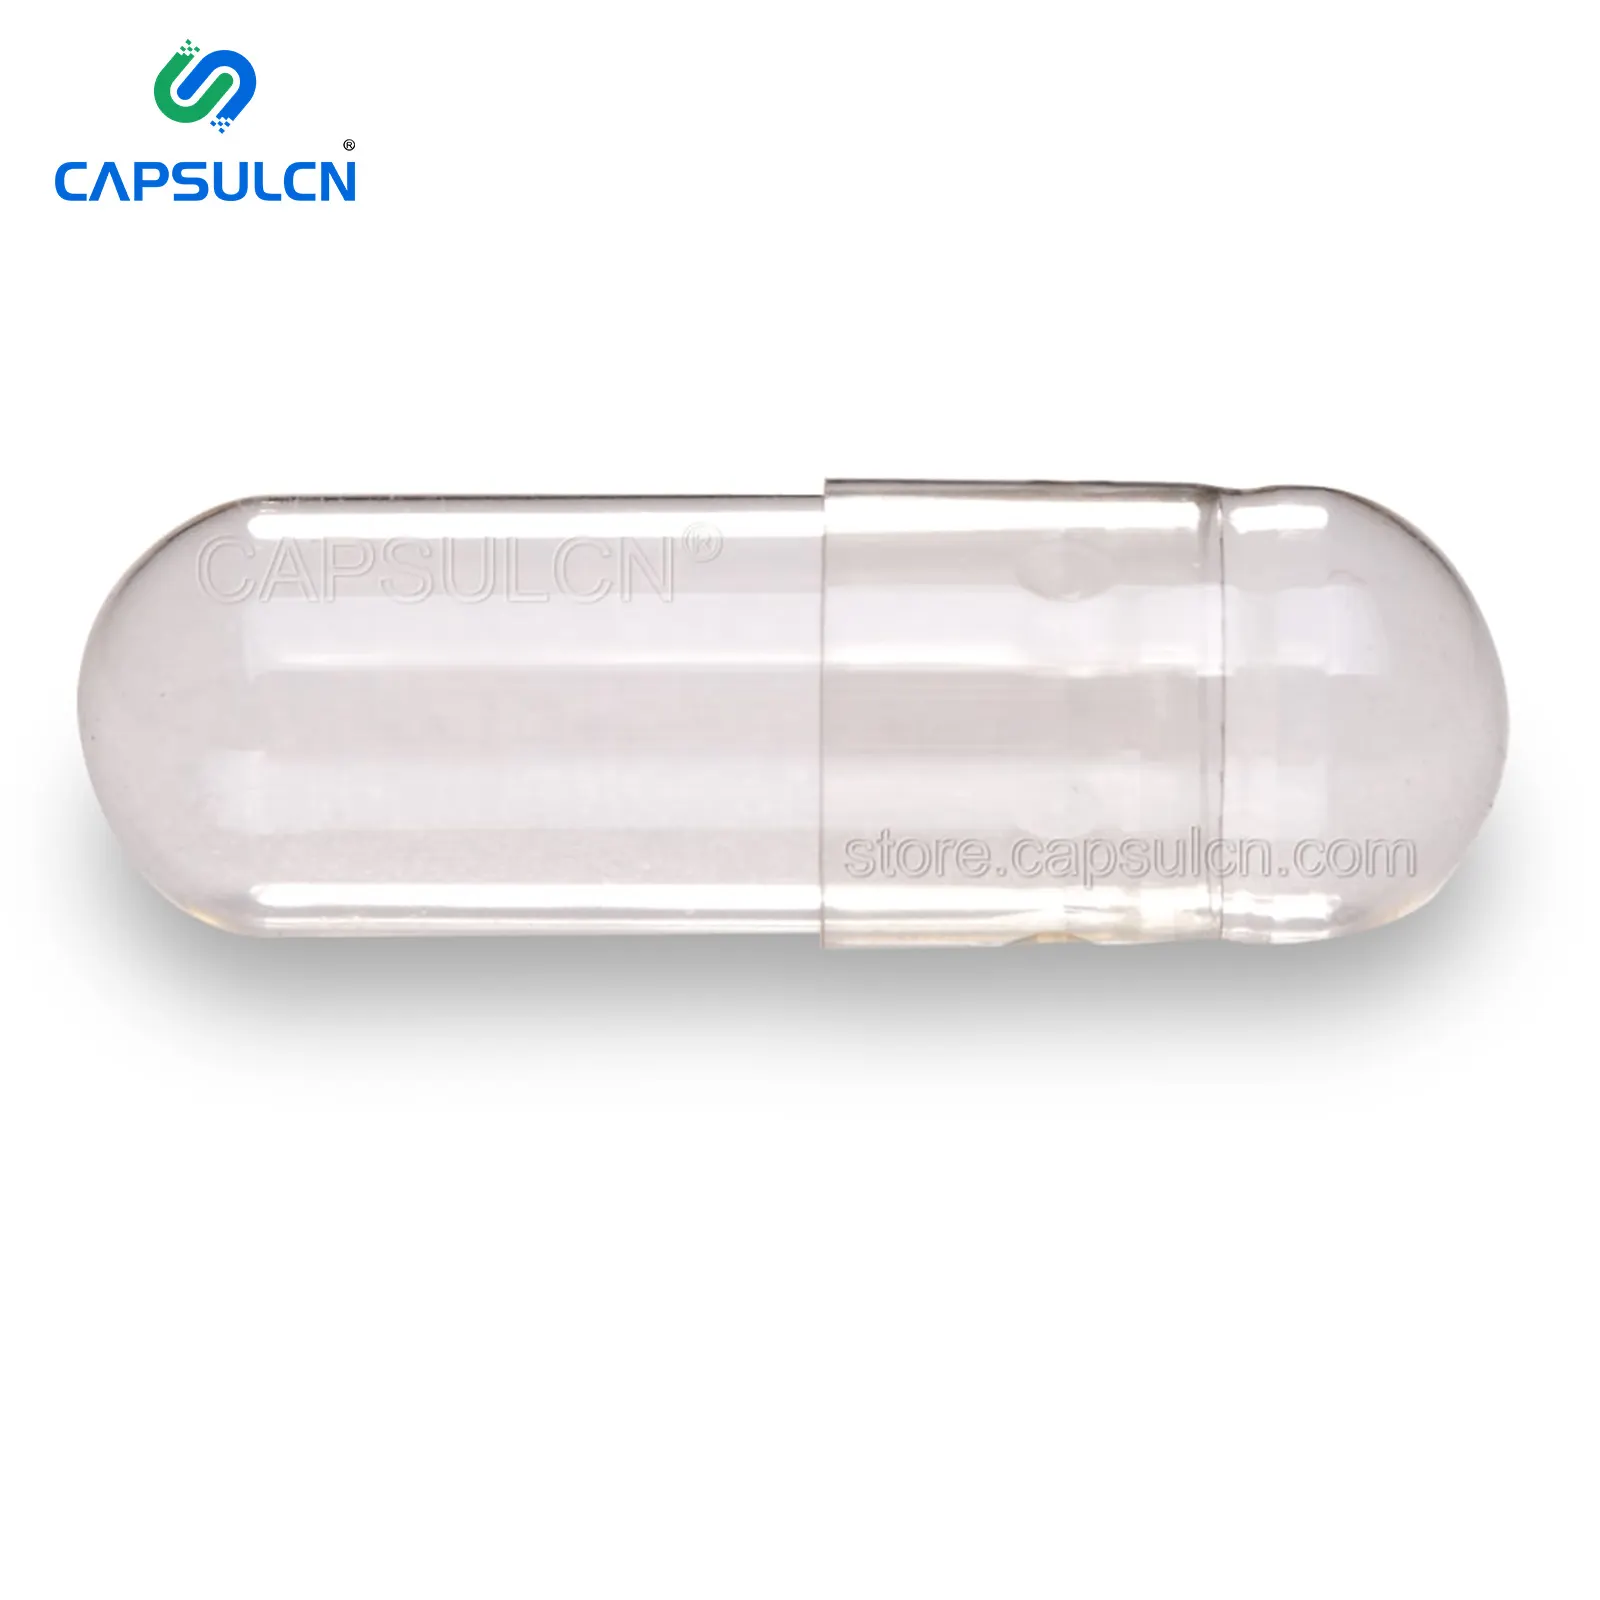 Cápsula cn gmp certificada de tamanho 0, cápsula para vegetais e legumes, transparente